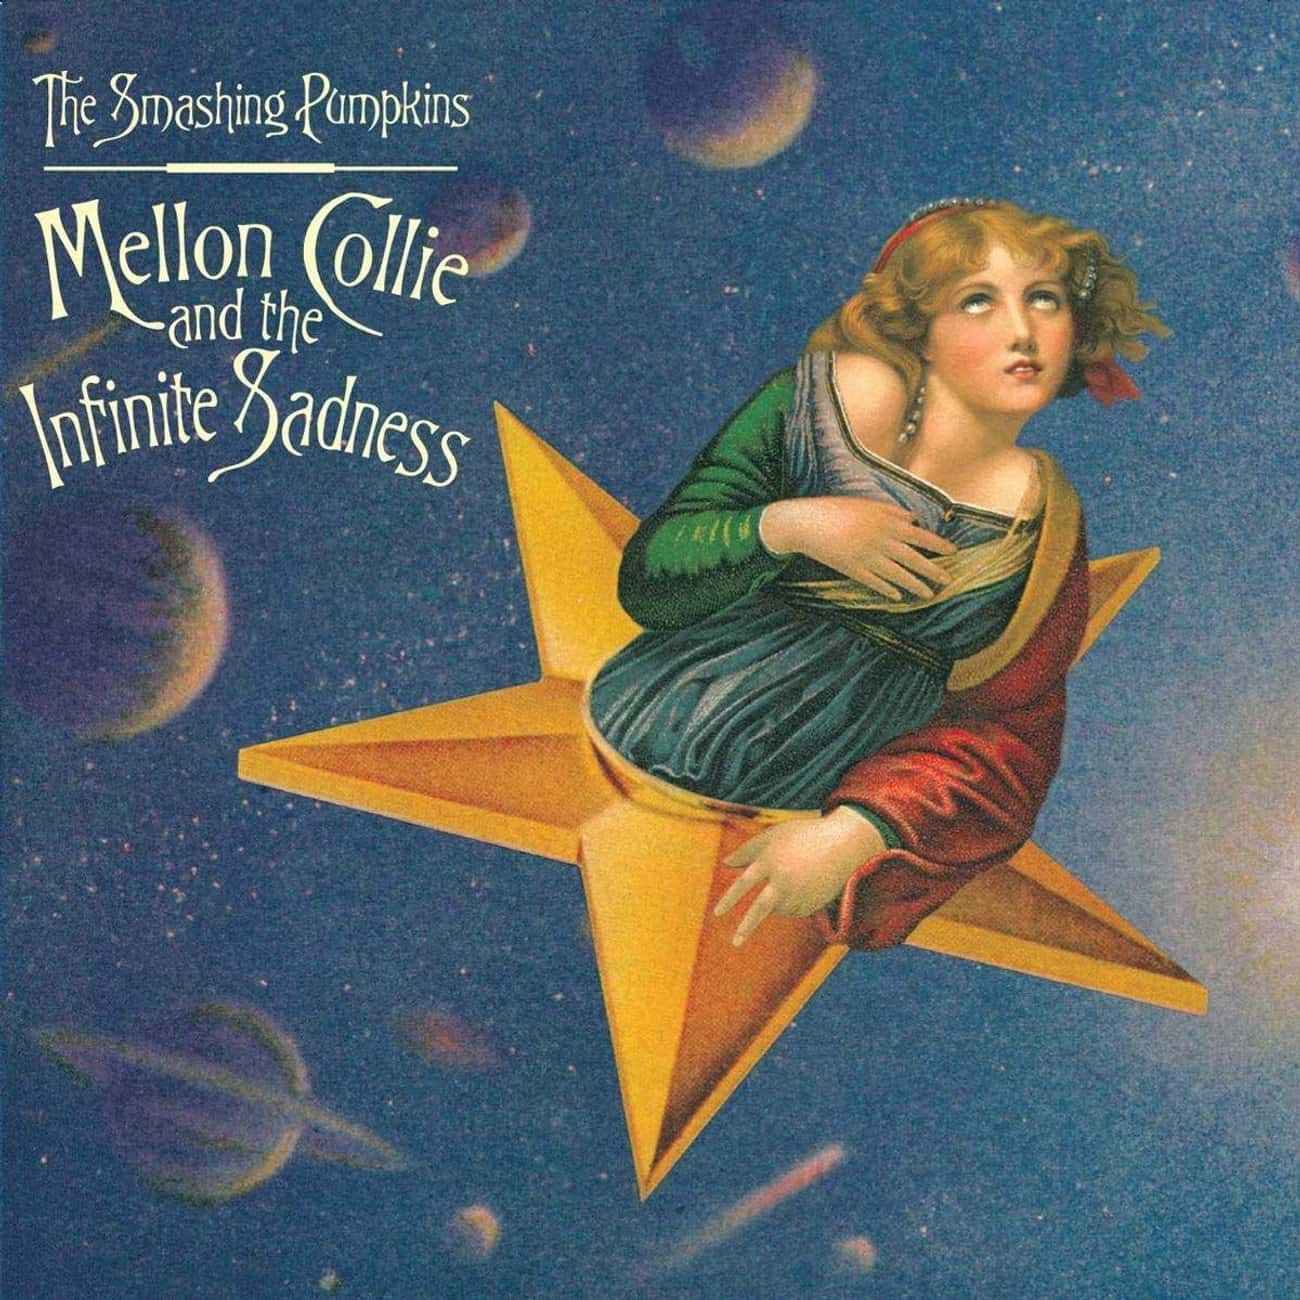 The Smashing Pumpkins - 'Mellon Collie and the Infinite Sadness'